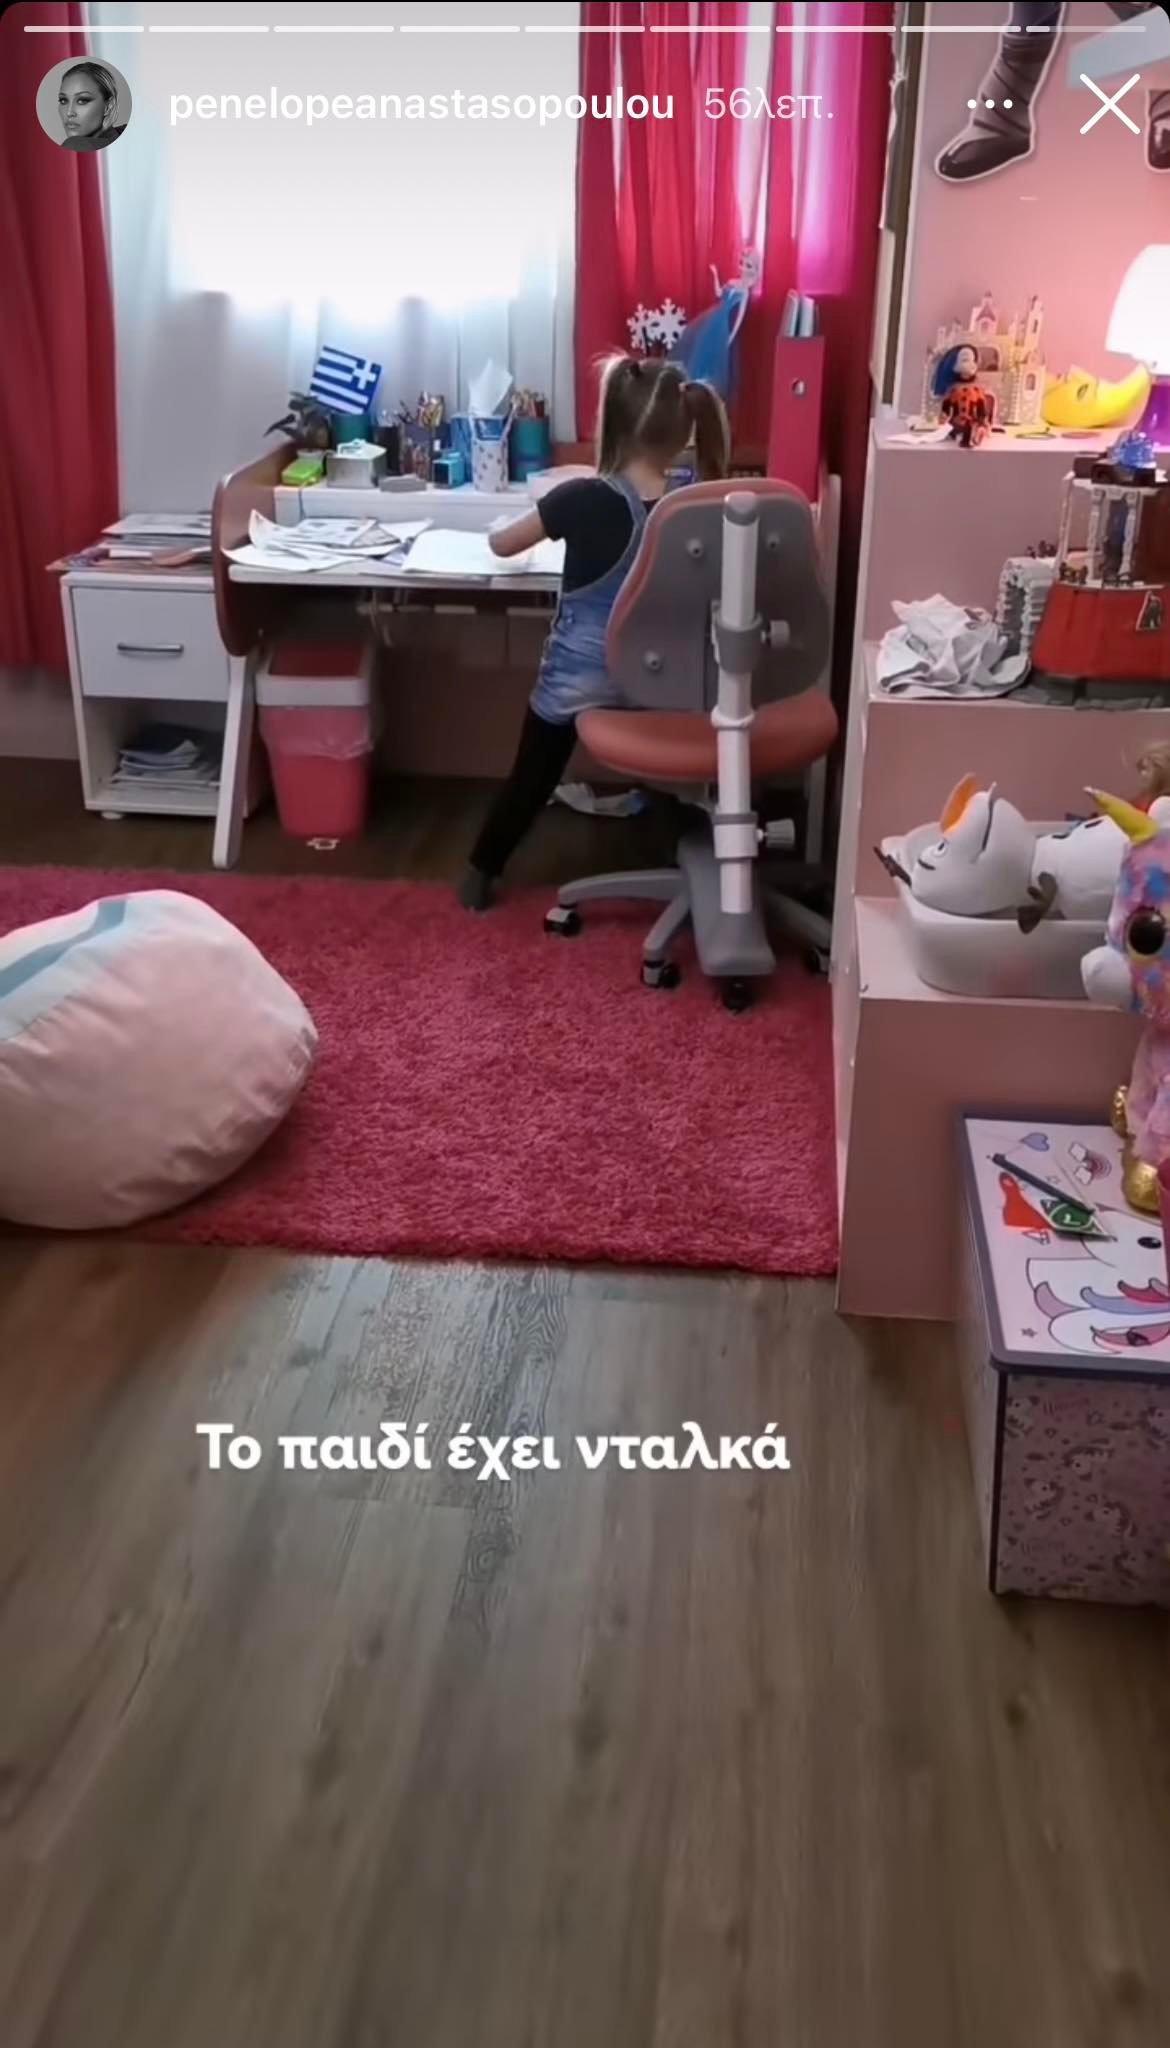 Πηνελόπη Αναστασοπούλου: Η μικρή της κόρη έχει το πιο παραμυθένιο παιδικό δωμάτιο- Το ροζ χρώμα κυριαρχεί